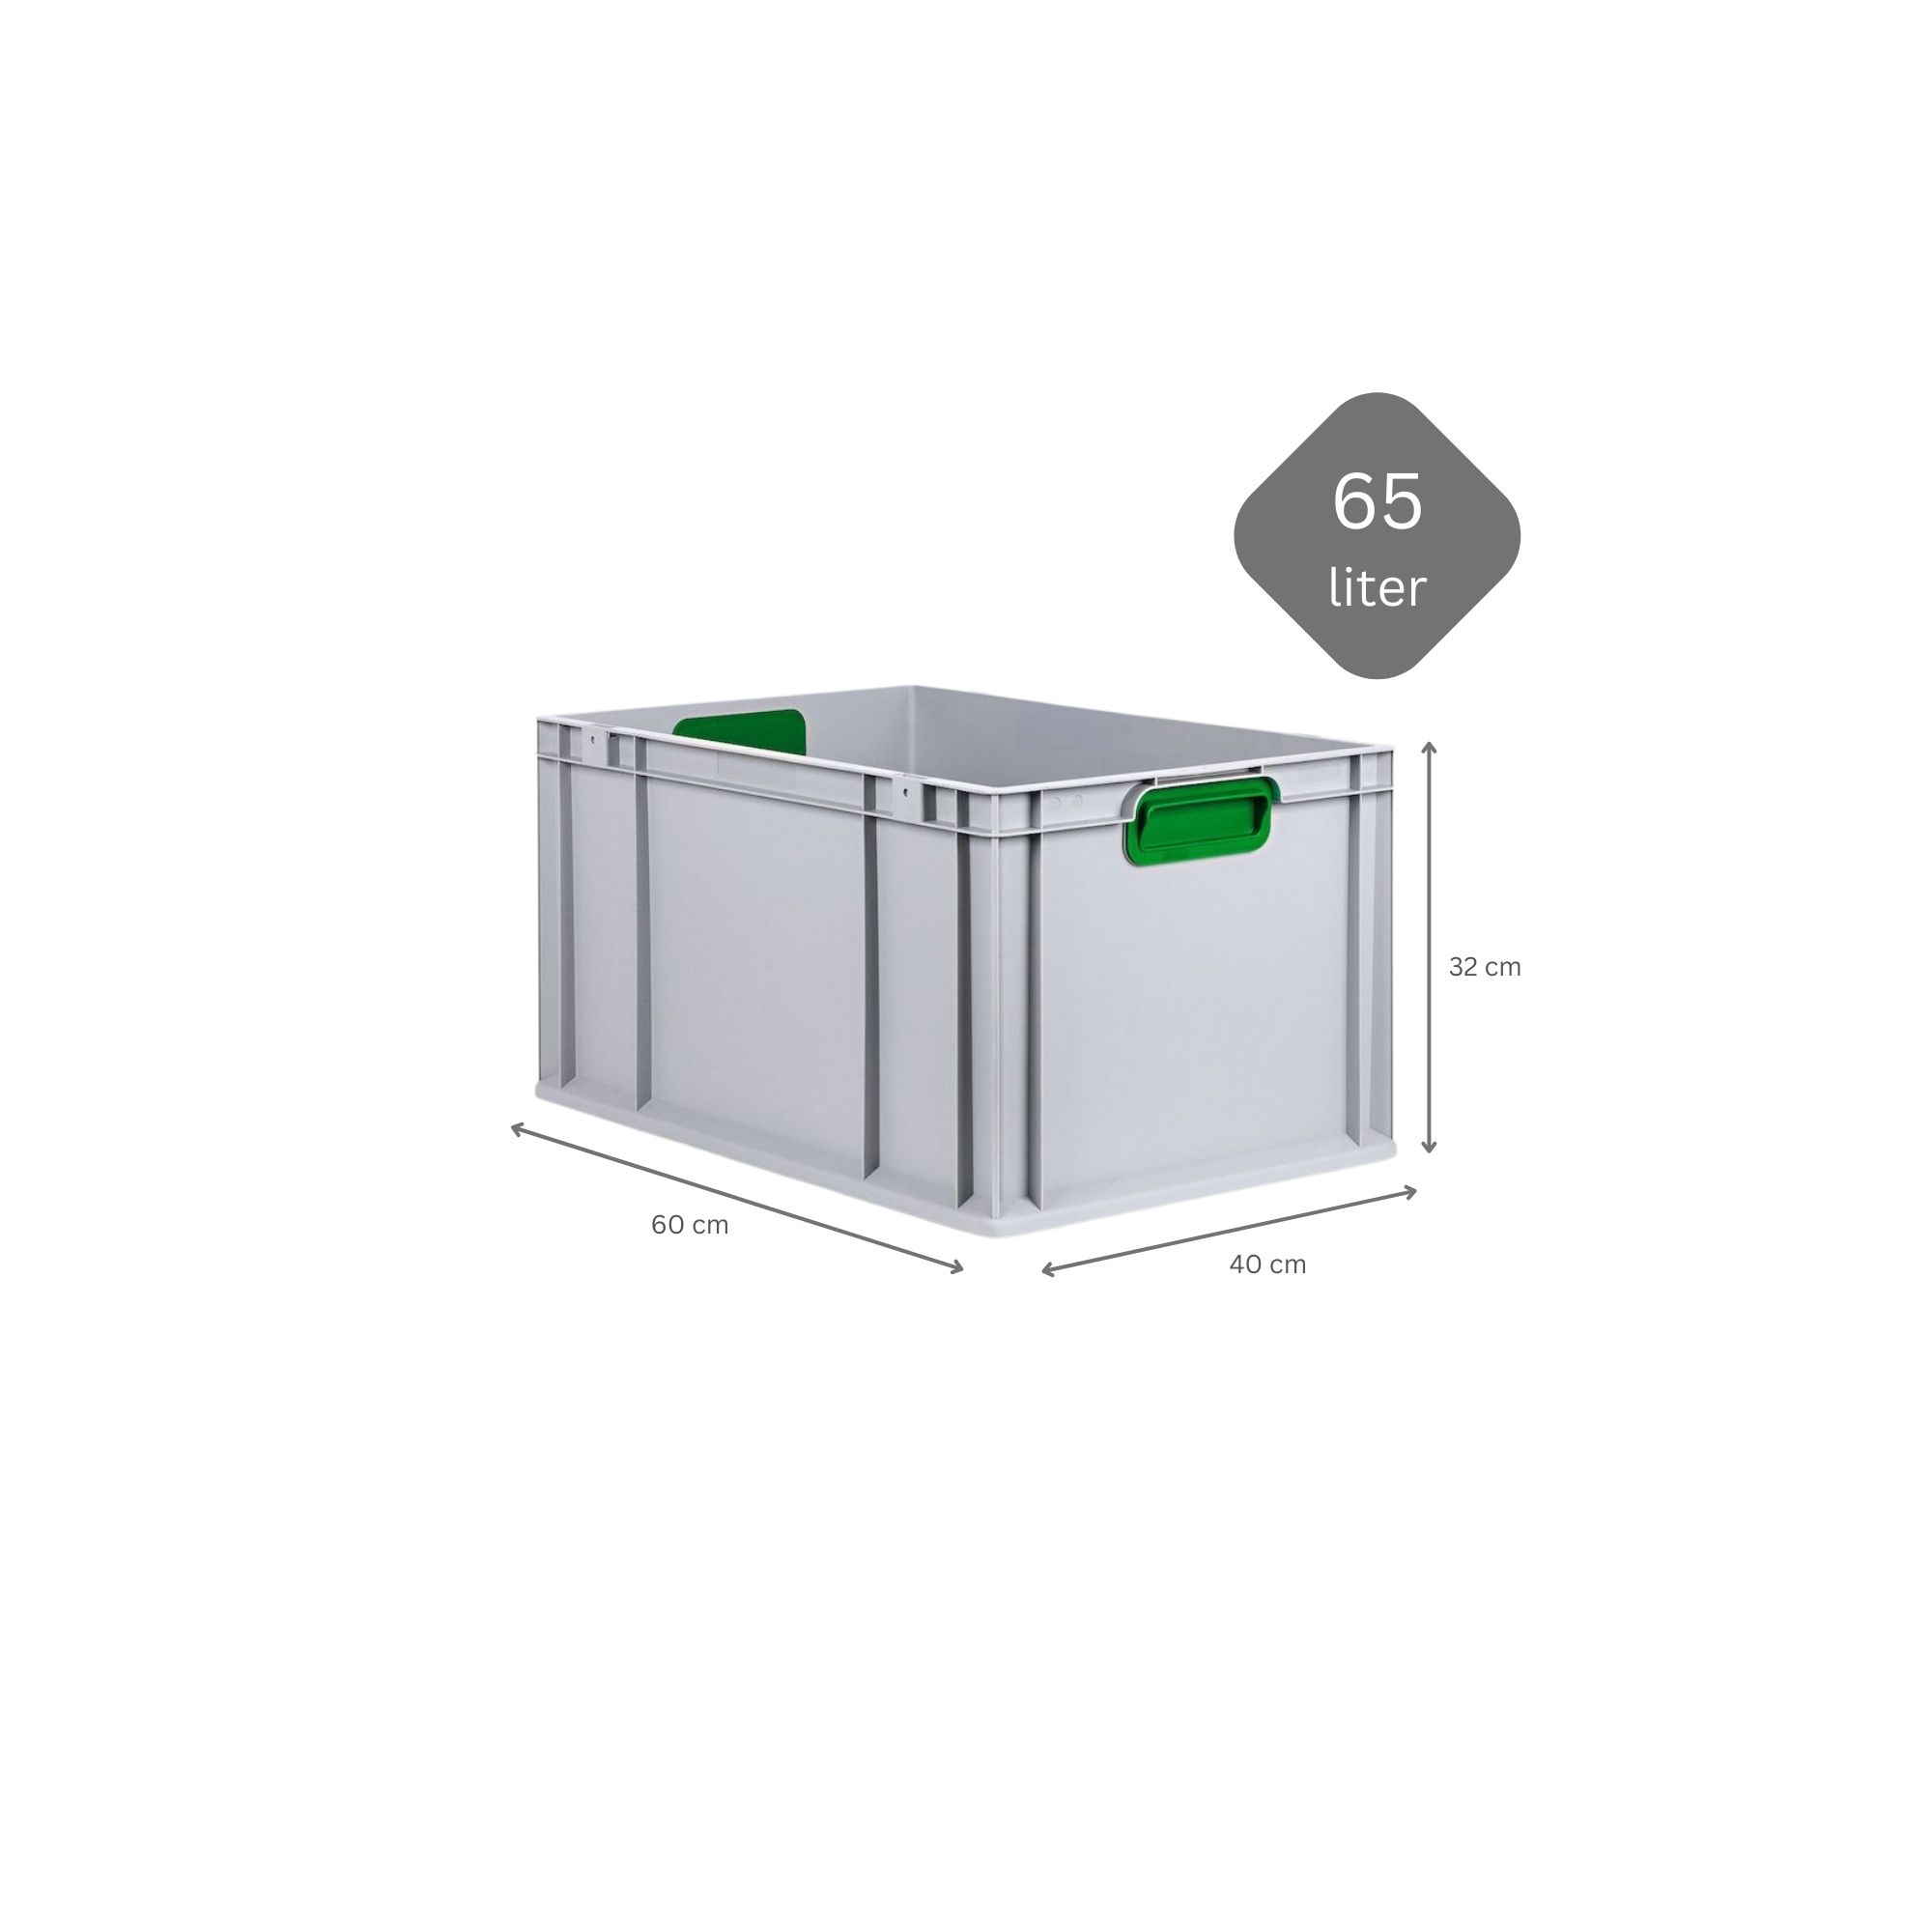 SparSet 5x Eurobox NextGen Color mit Auflagedeckel und Schiebeschnappverschlüsse | HxBxT 32x40x60cm | 65 Liter | Griffe grün geschlossen | Verstärkter Boden | Eurobehälter, Transportbox, Transportbehälter, Stapelbehälter